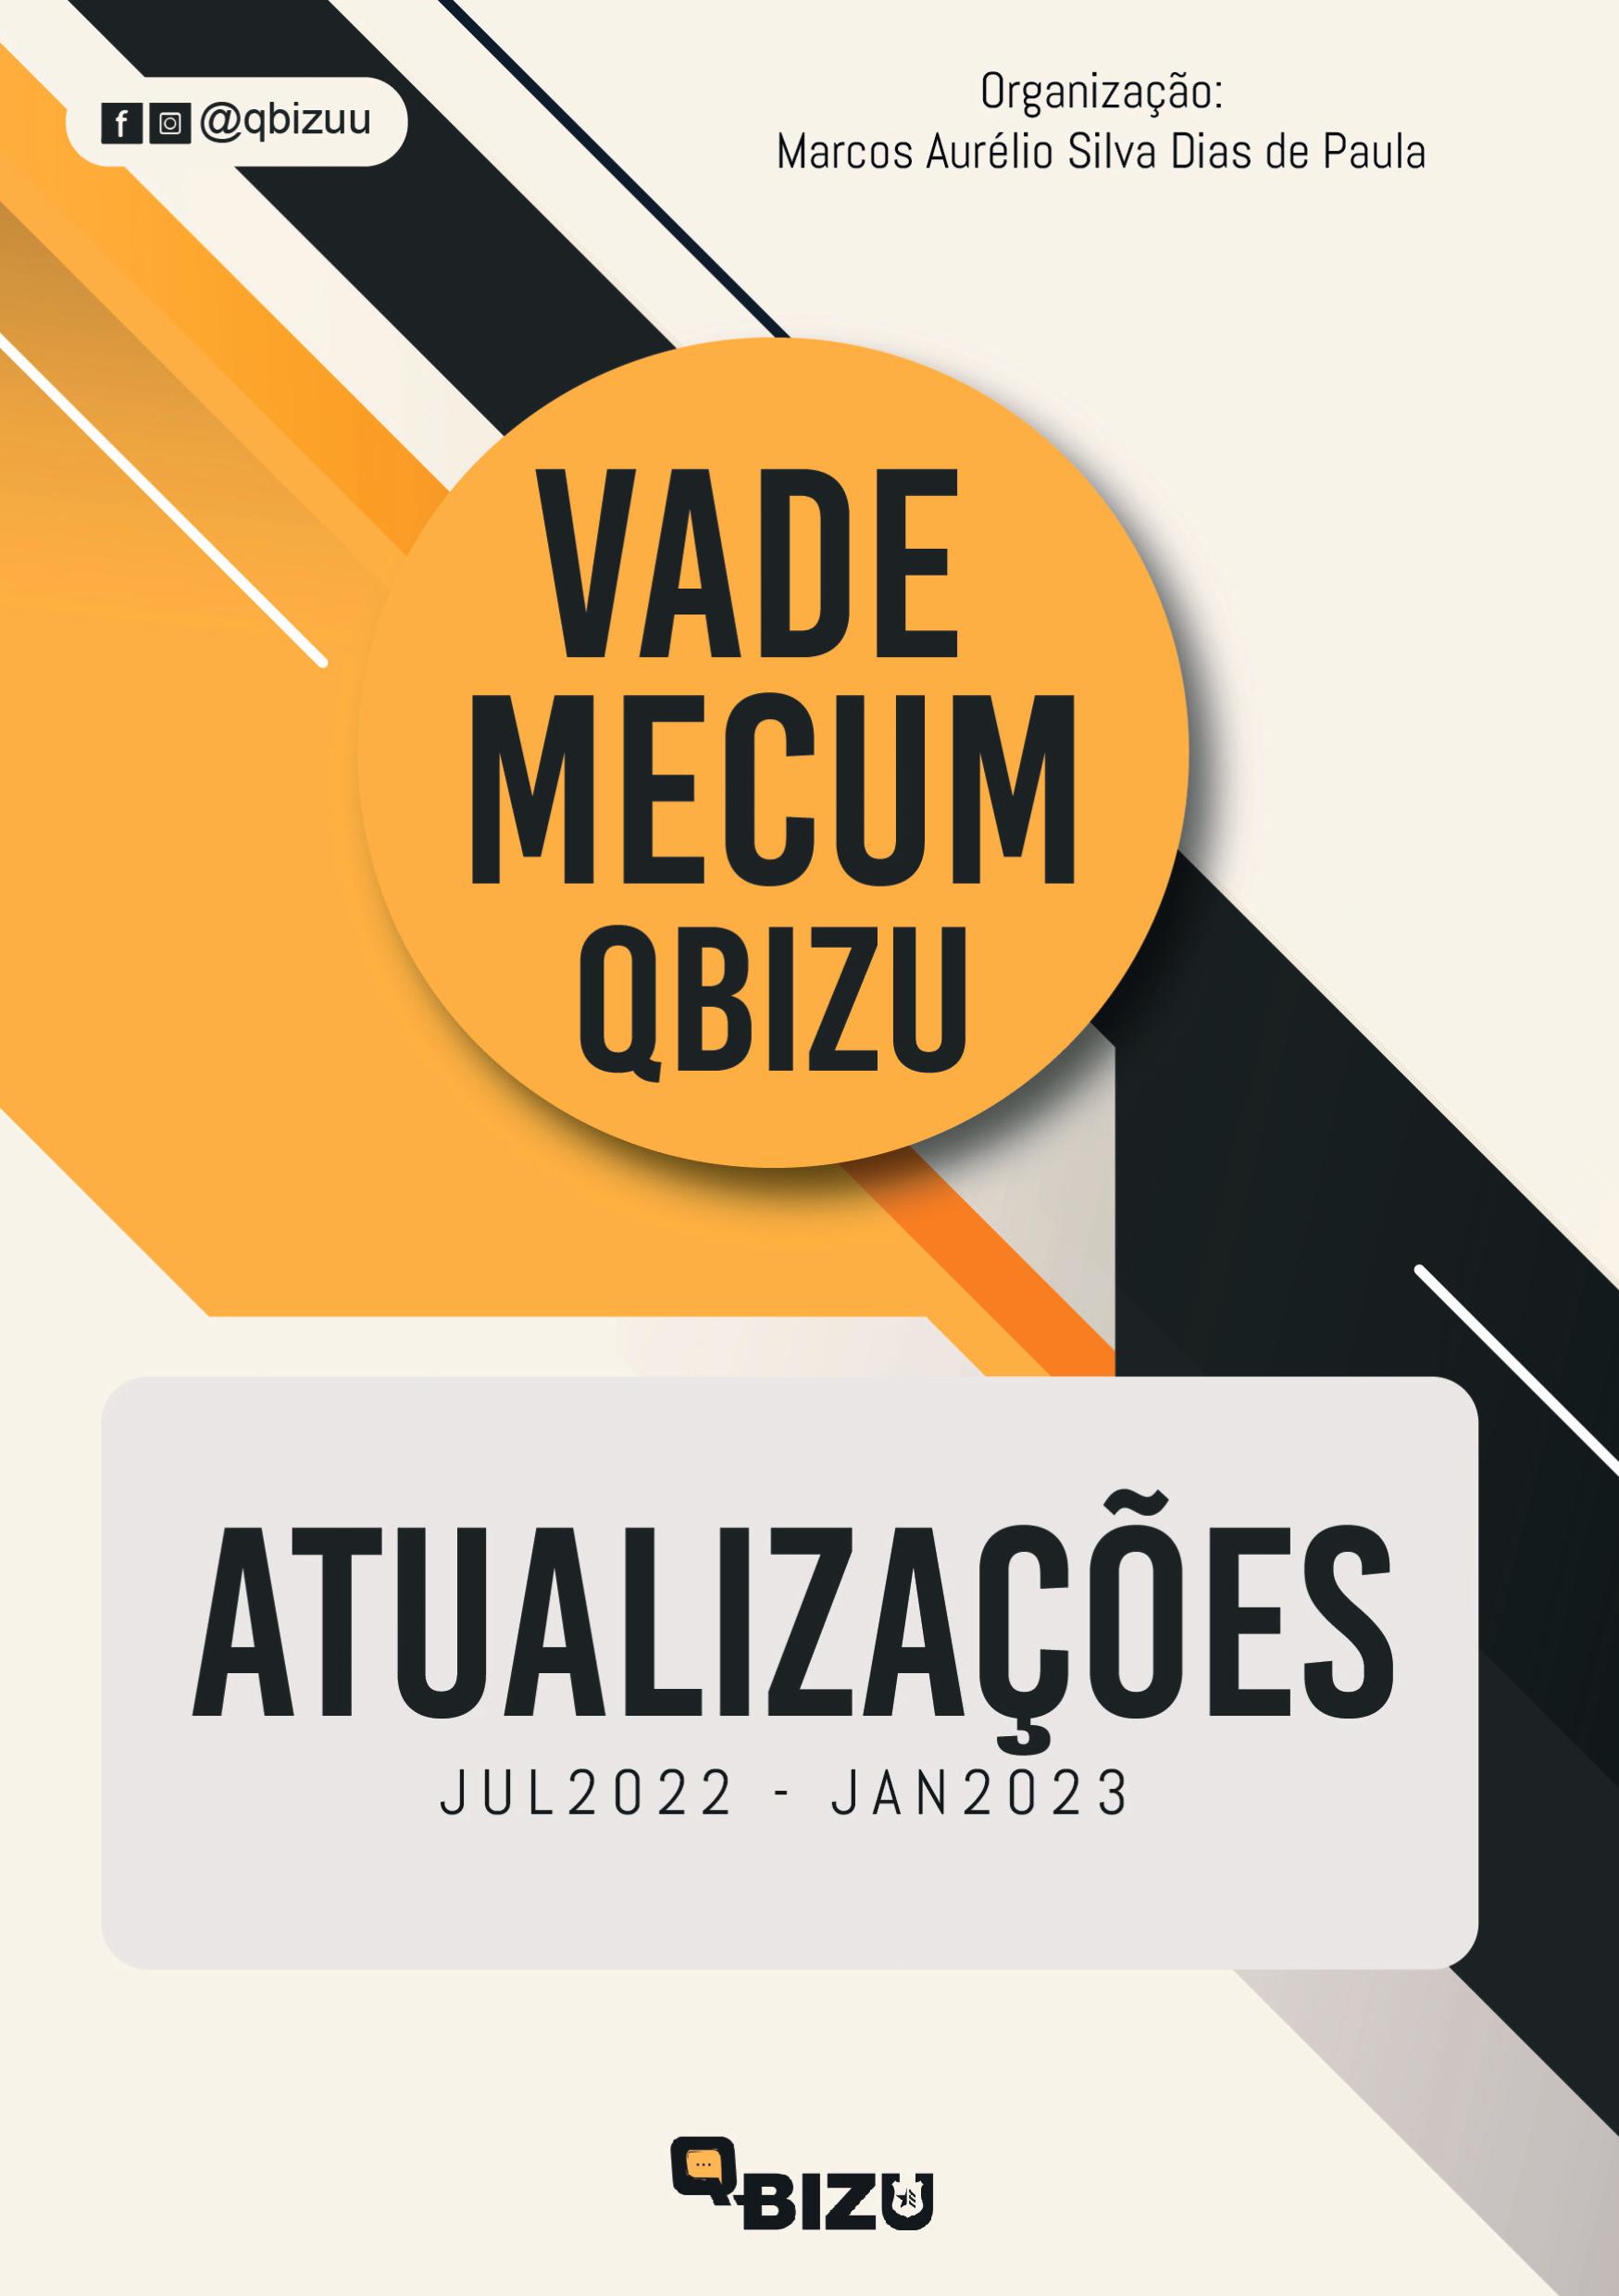 Livro Digital Decreto-Lei n. 2.848, de 7Dez40 -Código Penal Brasileiro (CPB) de Atualizações Vade Mecum Qbizu - Jul22 - Jan23